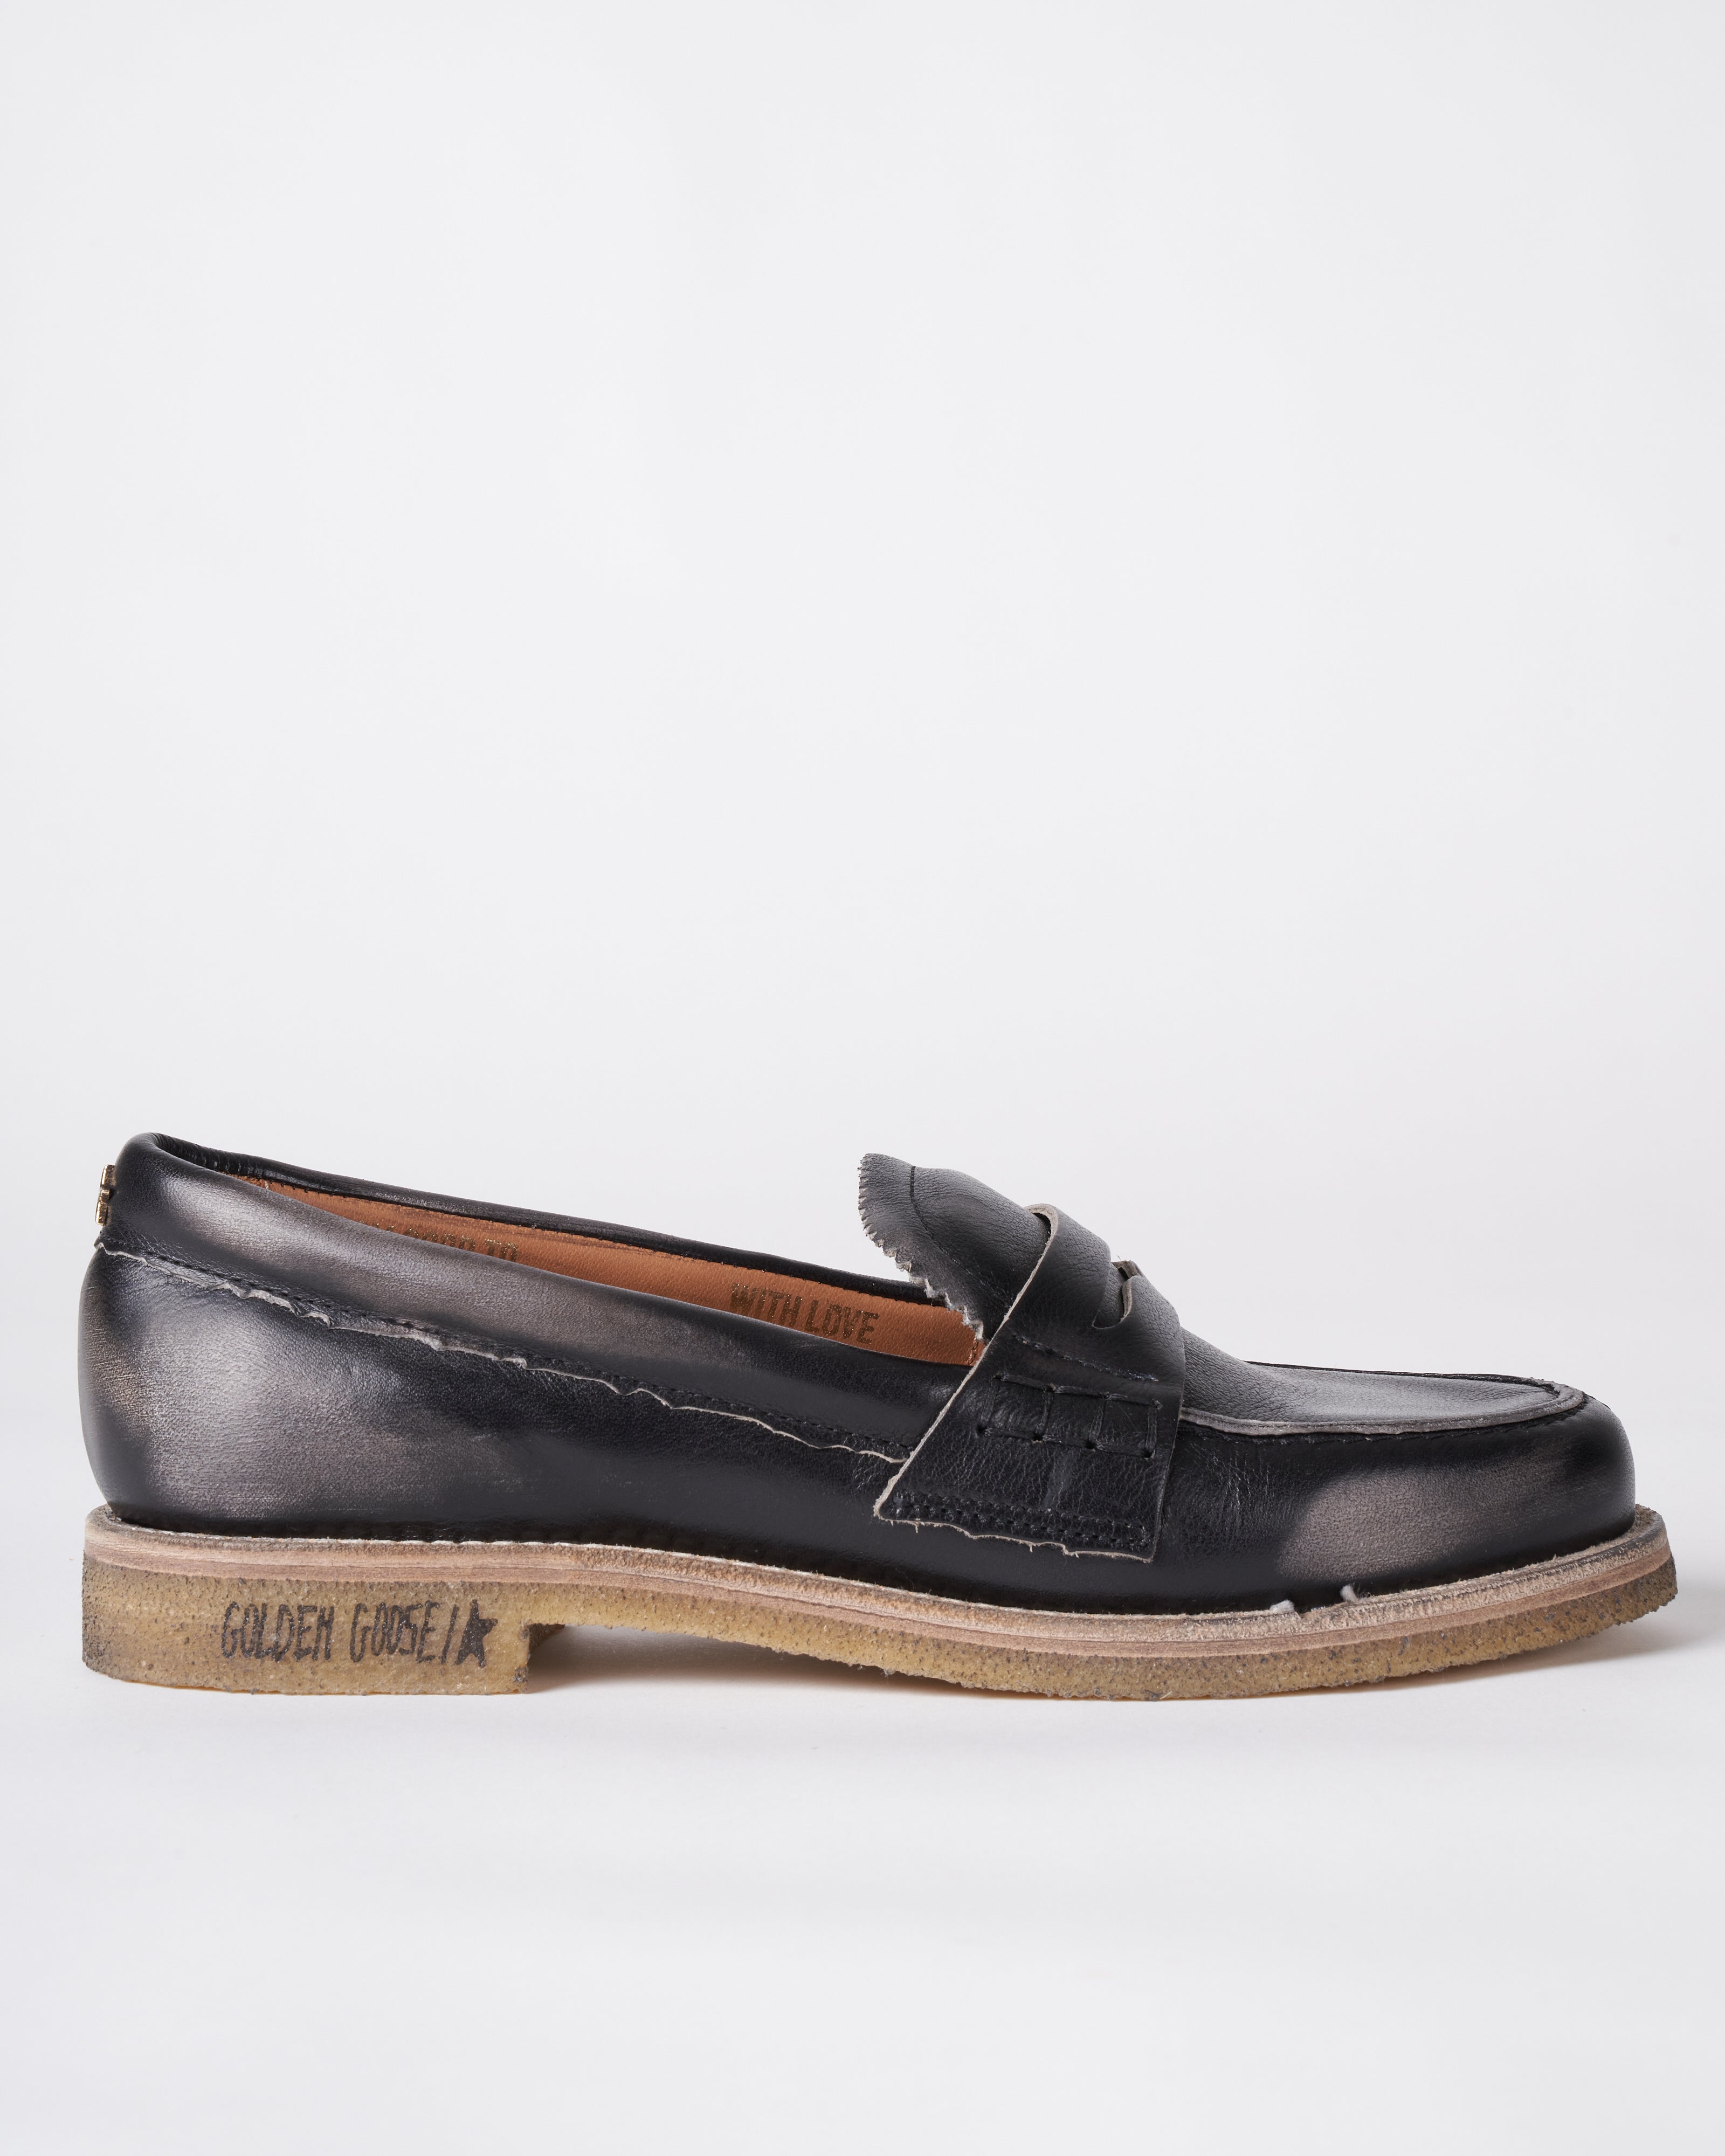 Classic Shoes Pure Leather Size 40/ 41/ 42/ 43/ 44/ 45. Bei 120,000 tu.  📞Call/whatsapp 👉0678908403. Tupo Kariakoo mtaa wa…